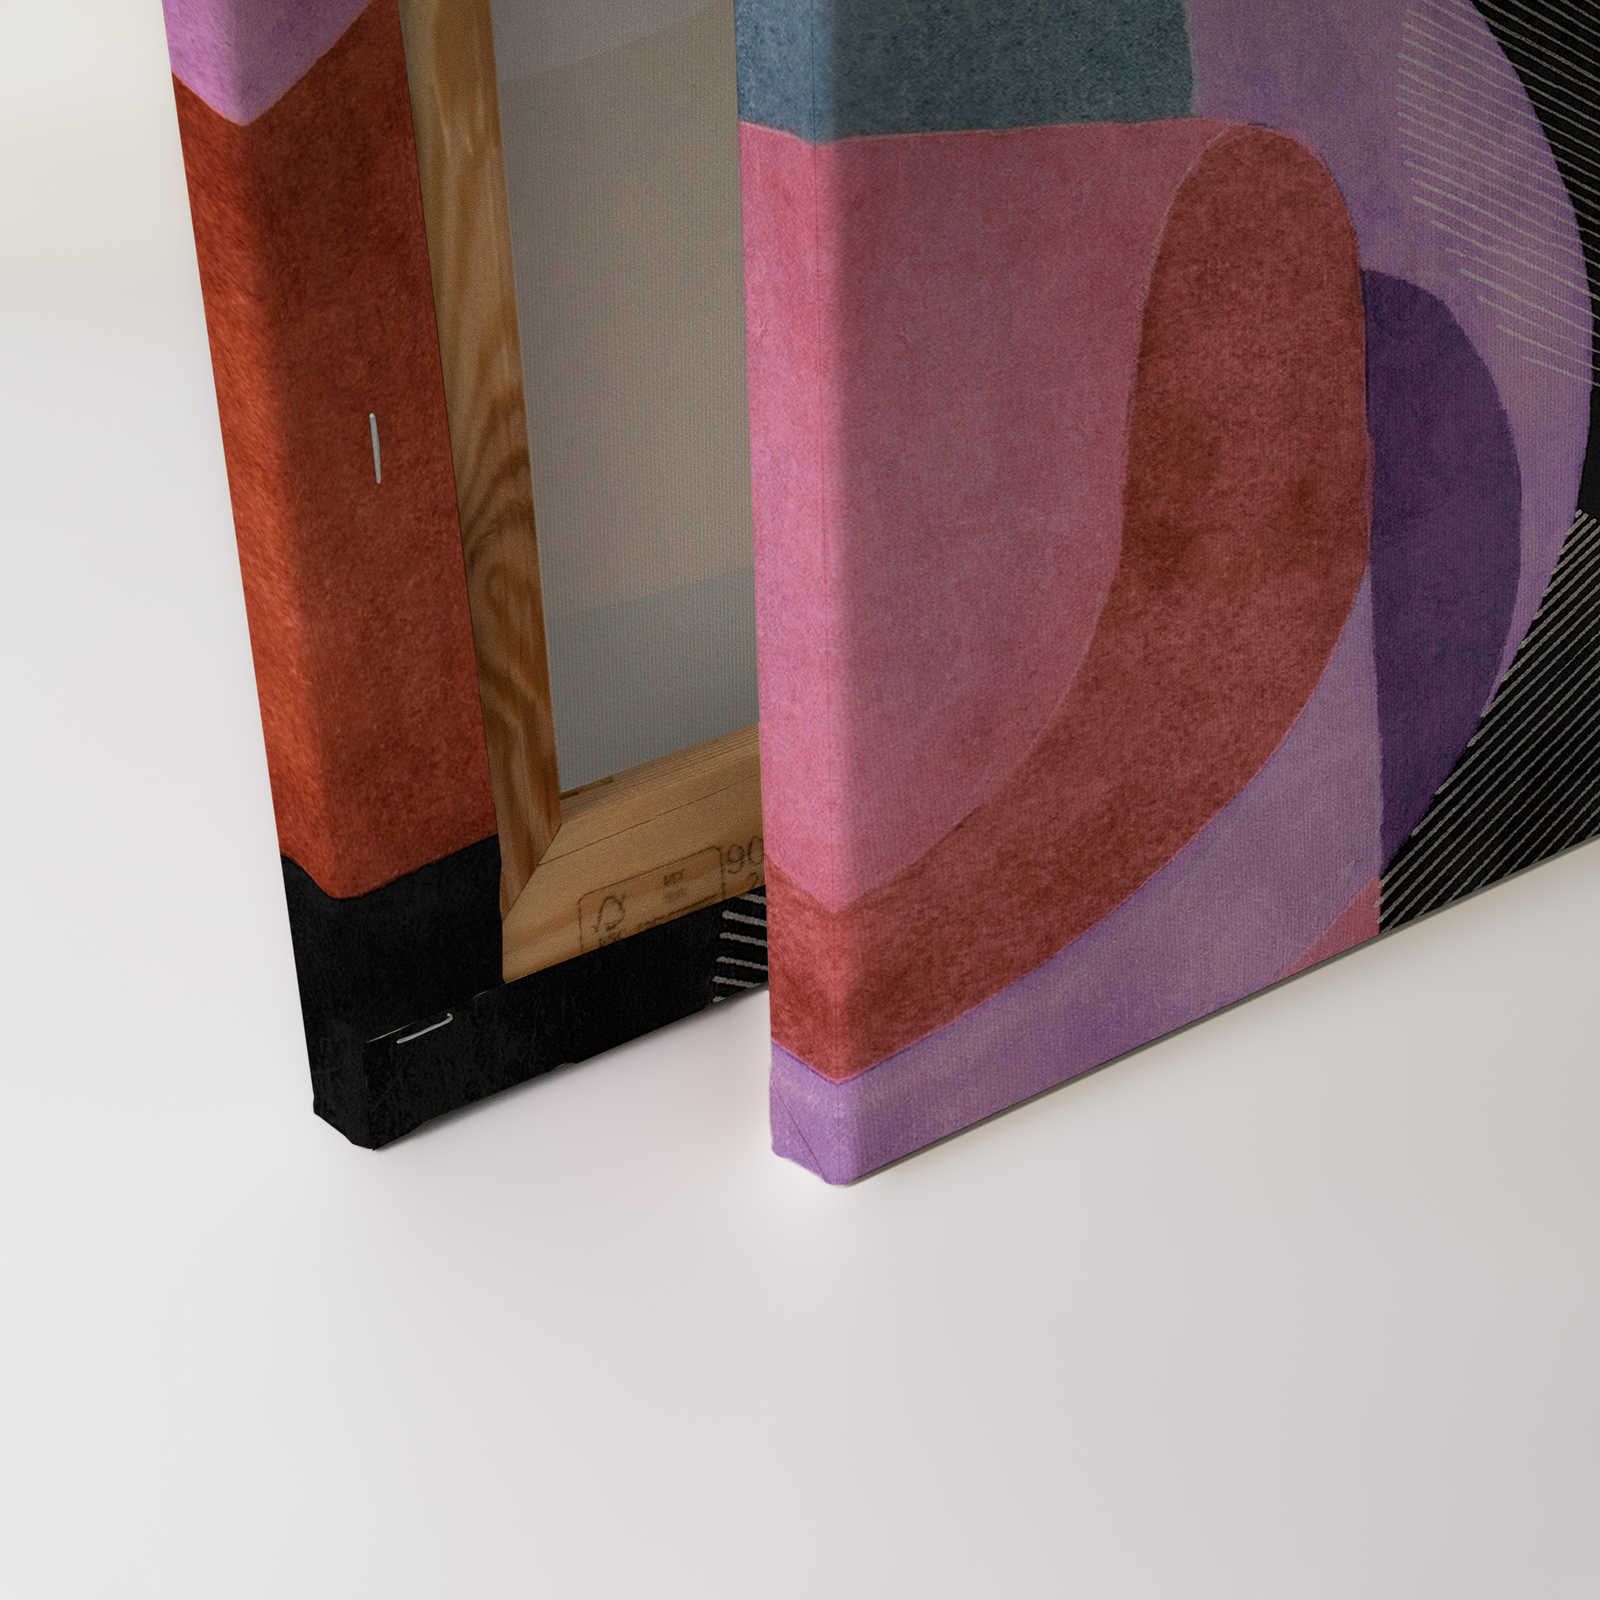             Lugar de encuentro 2 - Cuadro en lienzo diseño etno abstracto en negro y rosa - 0,90 m x 0,60 m
        